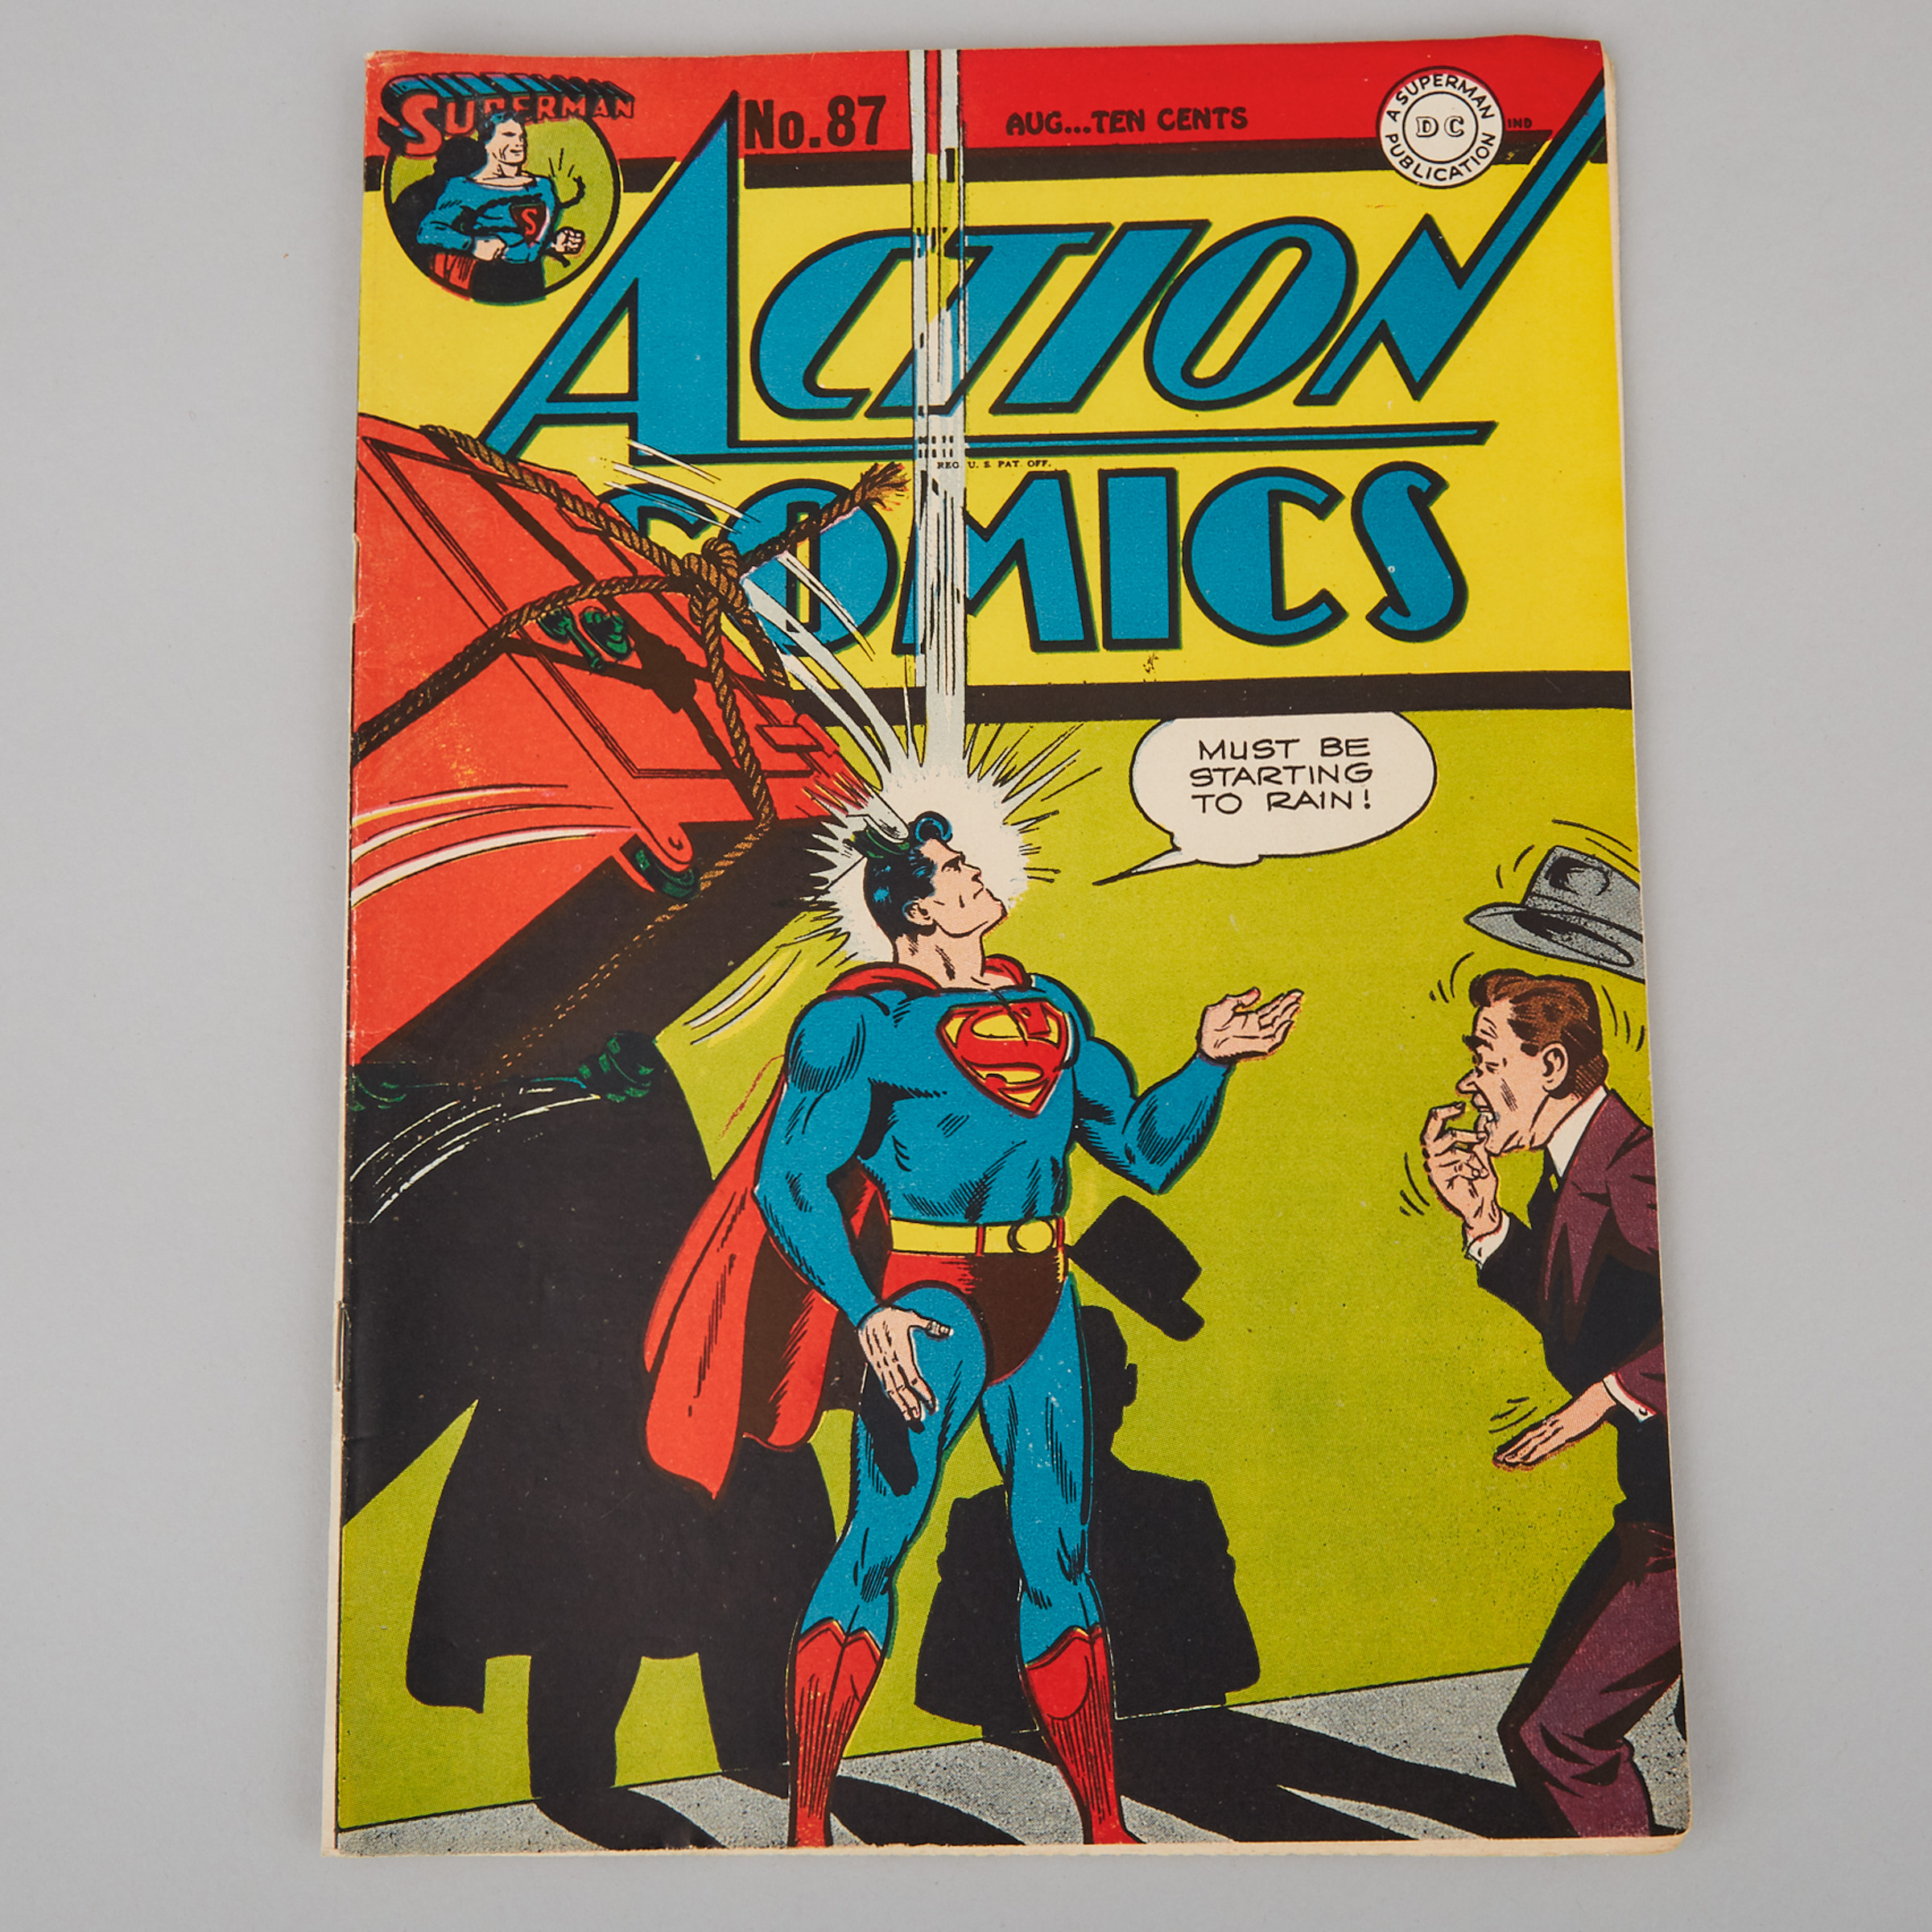 Superman DC 'Action Comics' No. 87, August, 1945